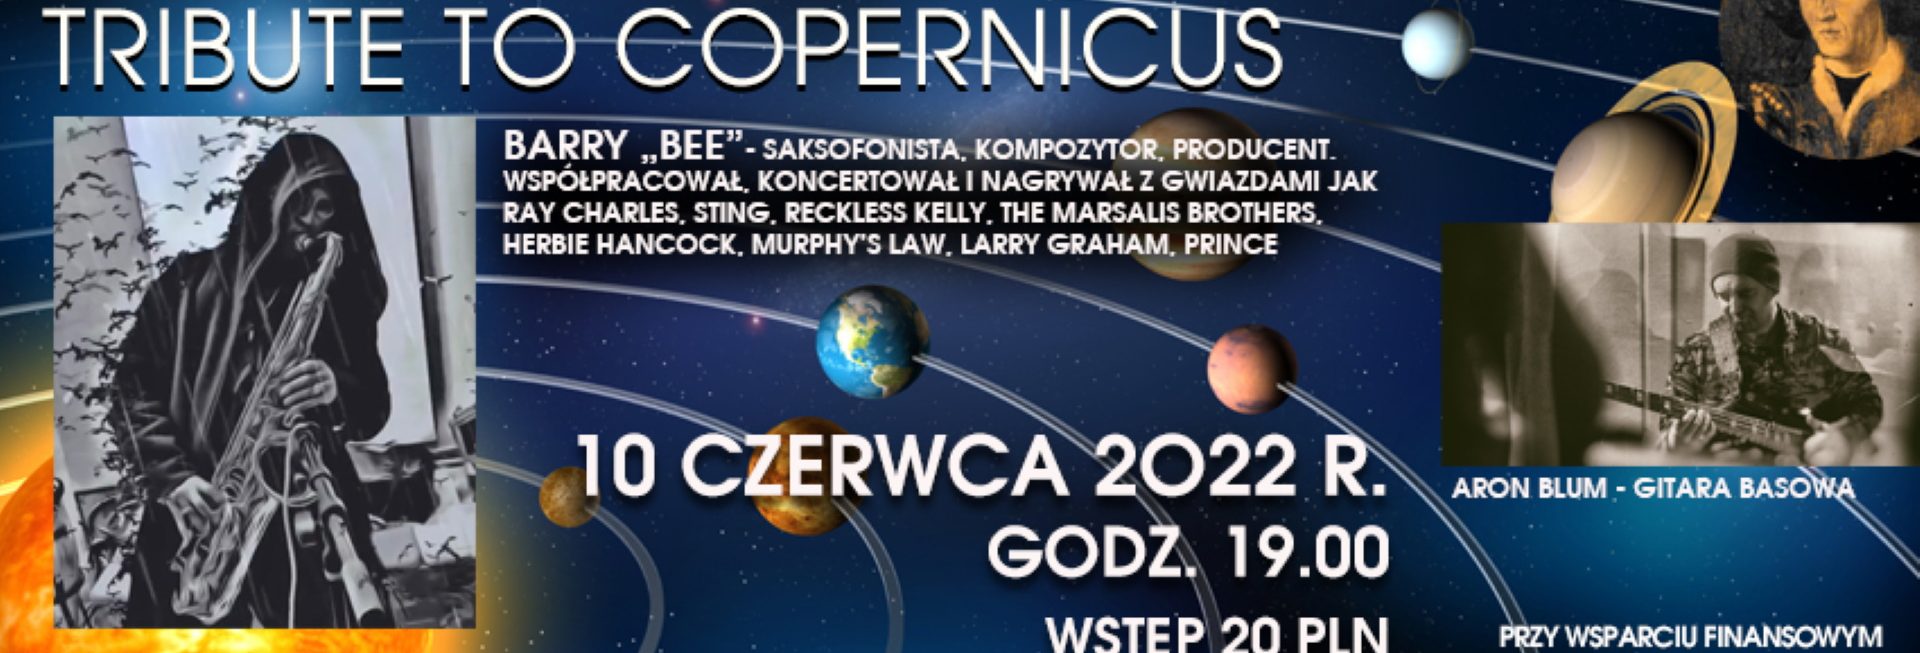 Plakat graficzny zapraszający do Olsztyńskiego Planetarium na koncert "Third Stone from the Sun - Tribute to Copernicus" Planetarium Olsztyn 2022.